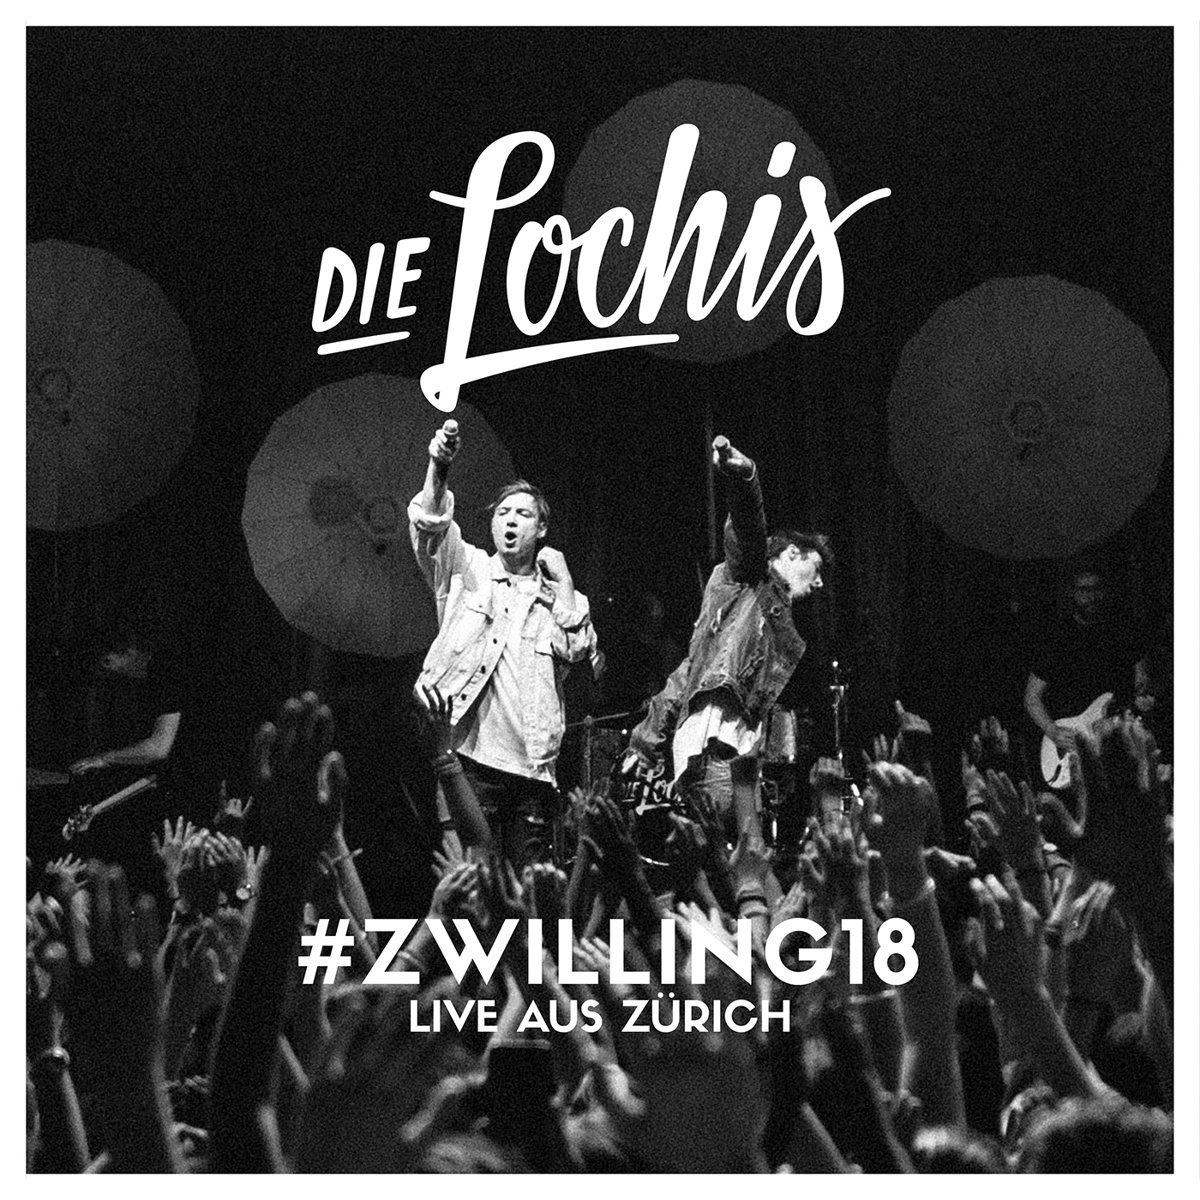 Zwilling18 Live Aus Zurich Die Lochis Jetzt Auf Dvd